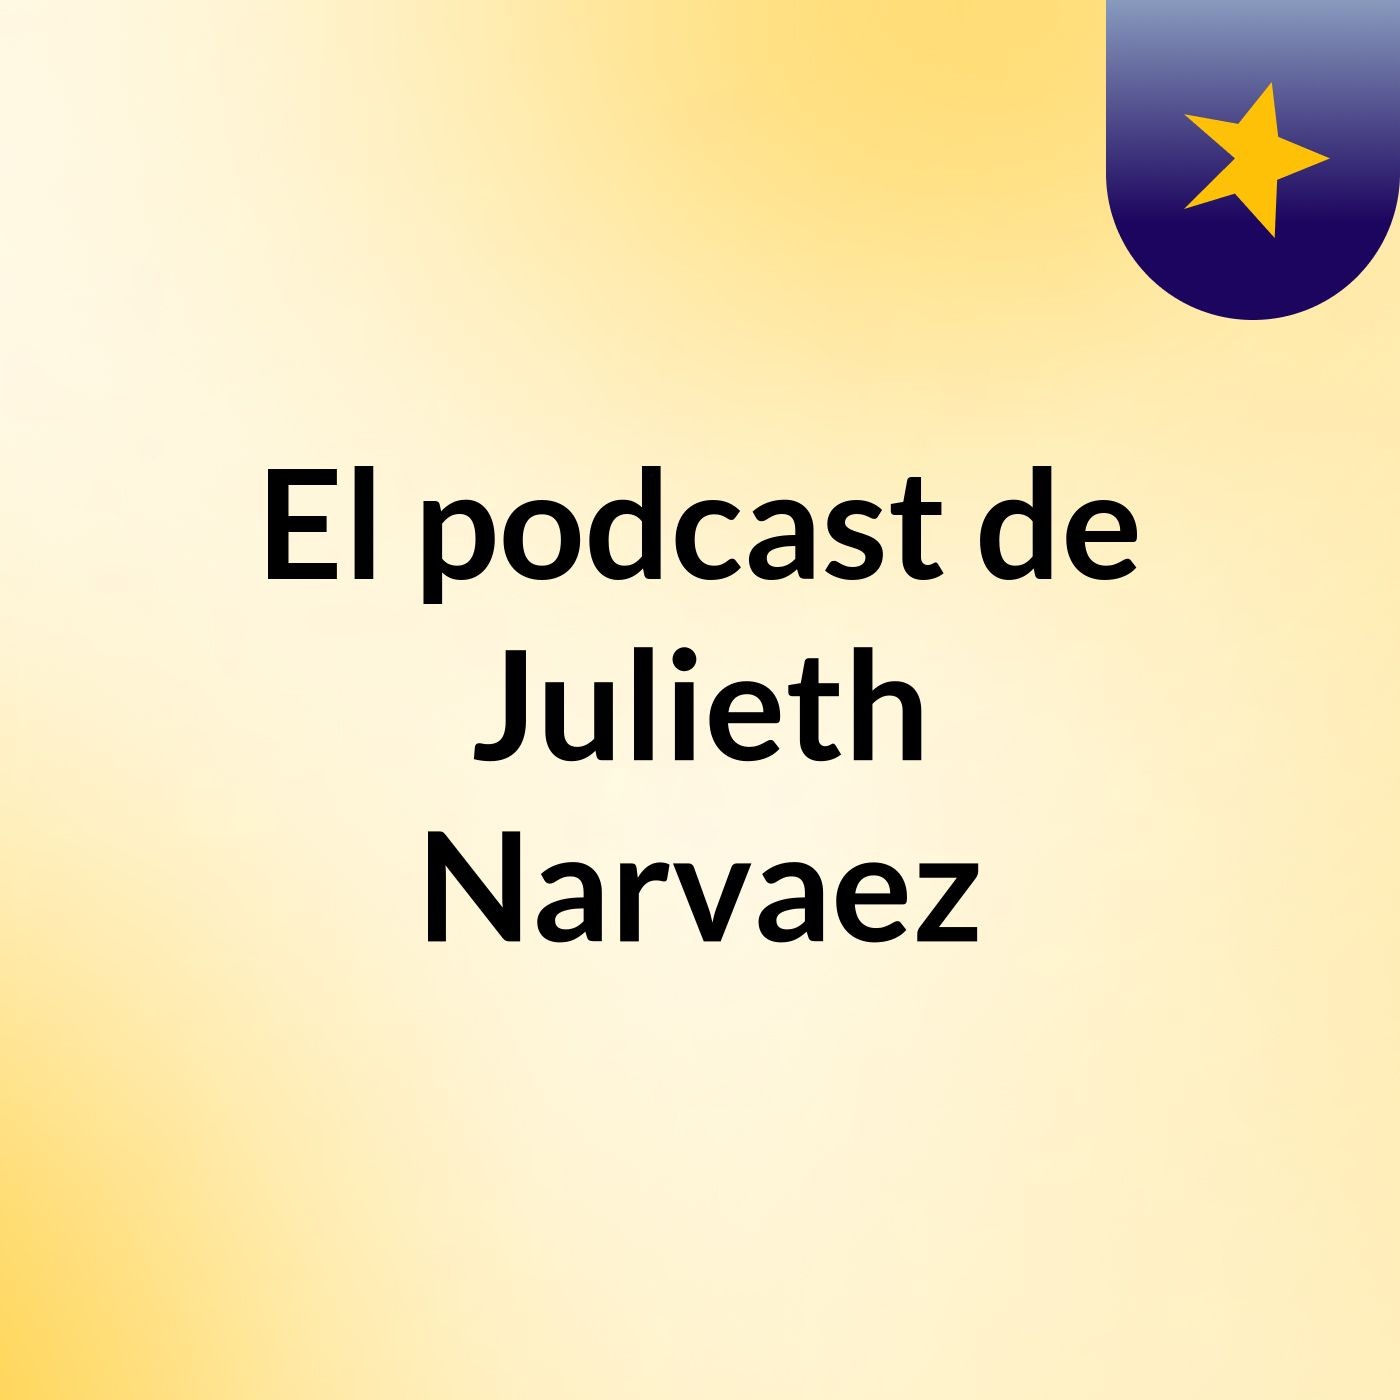 El podcast de Julieth Narvaez